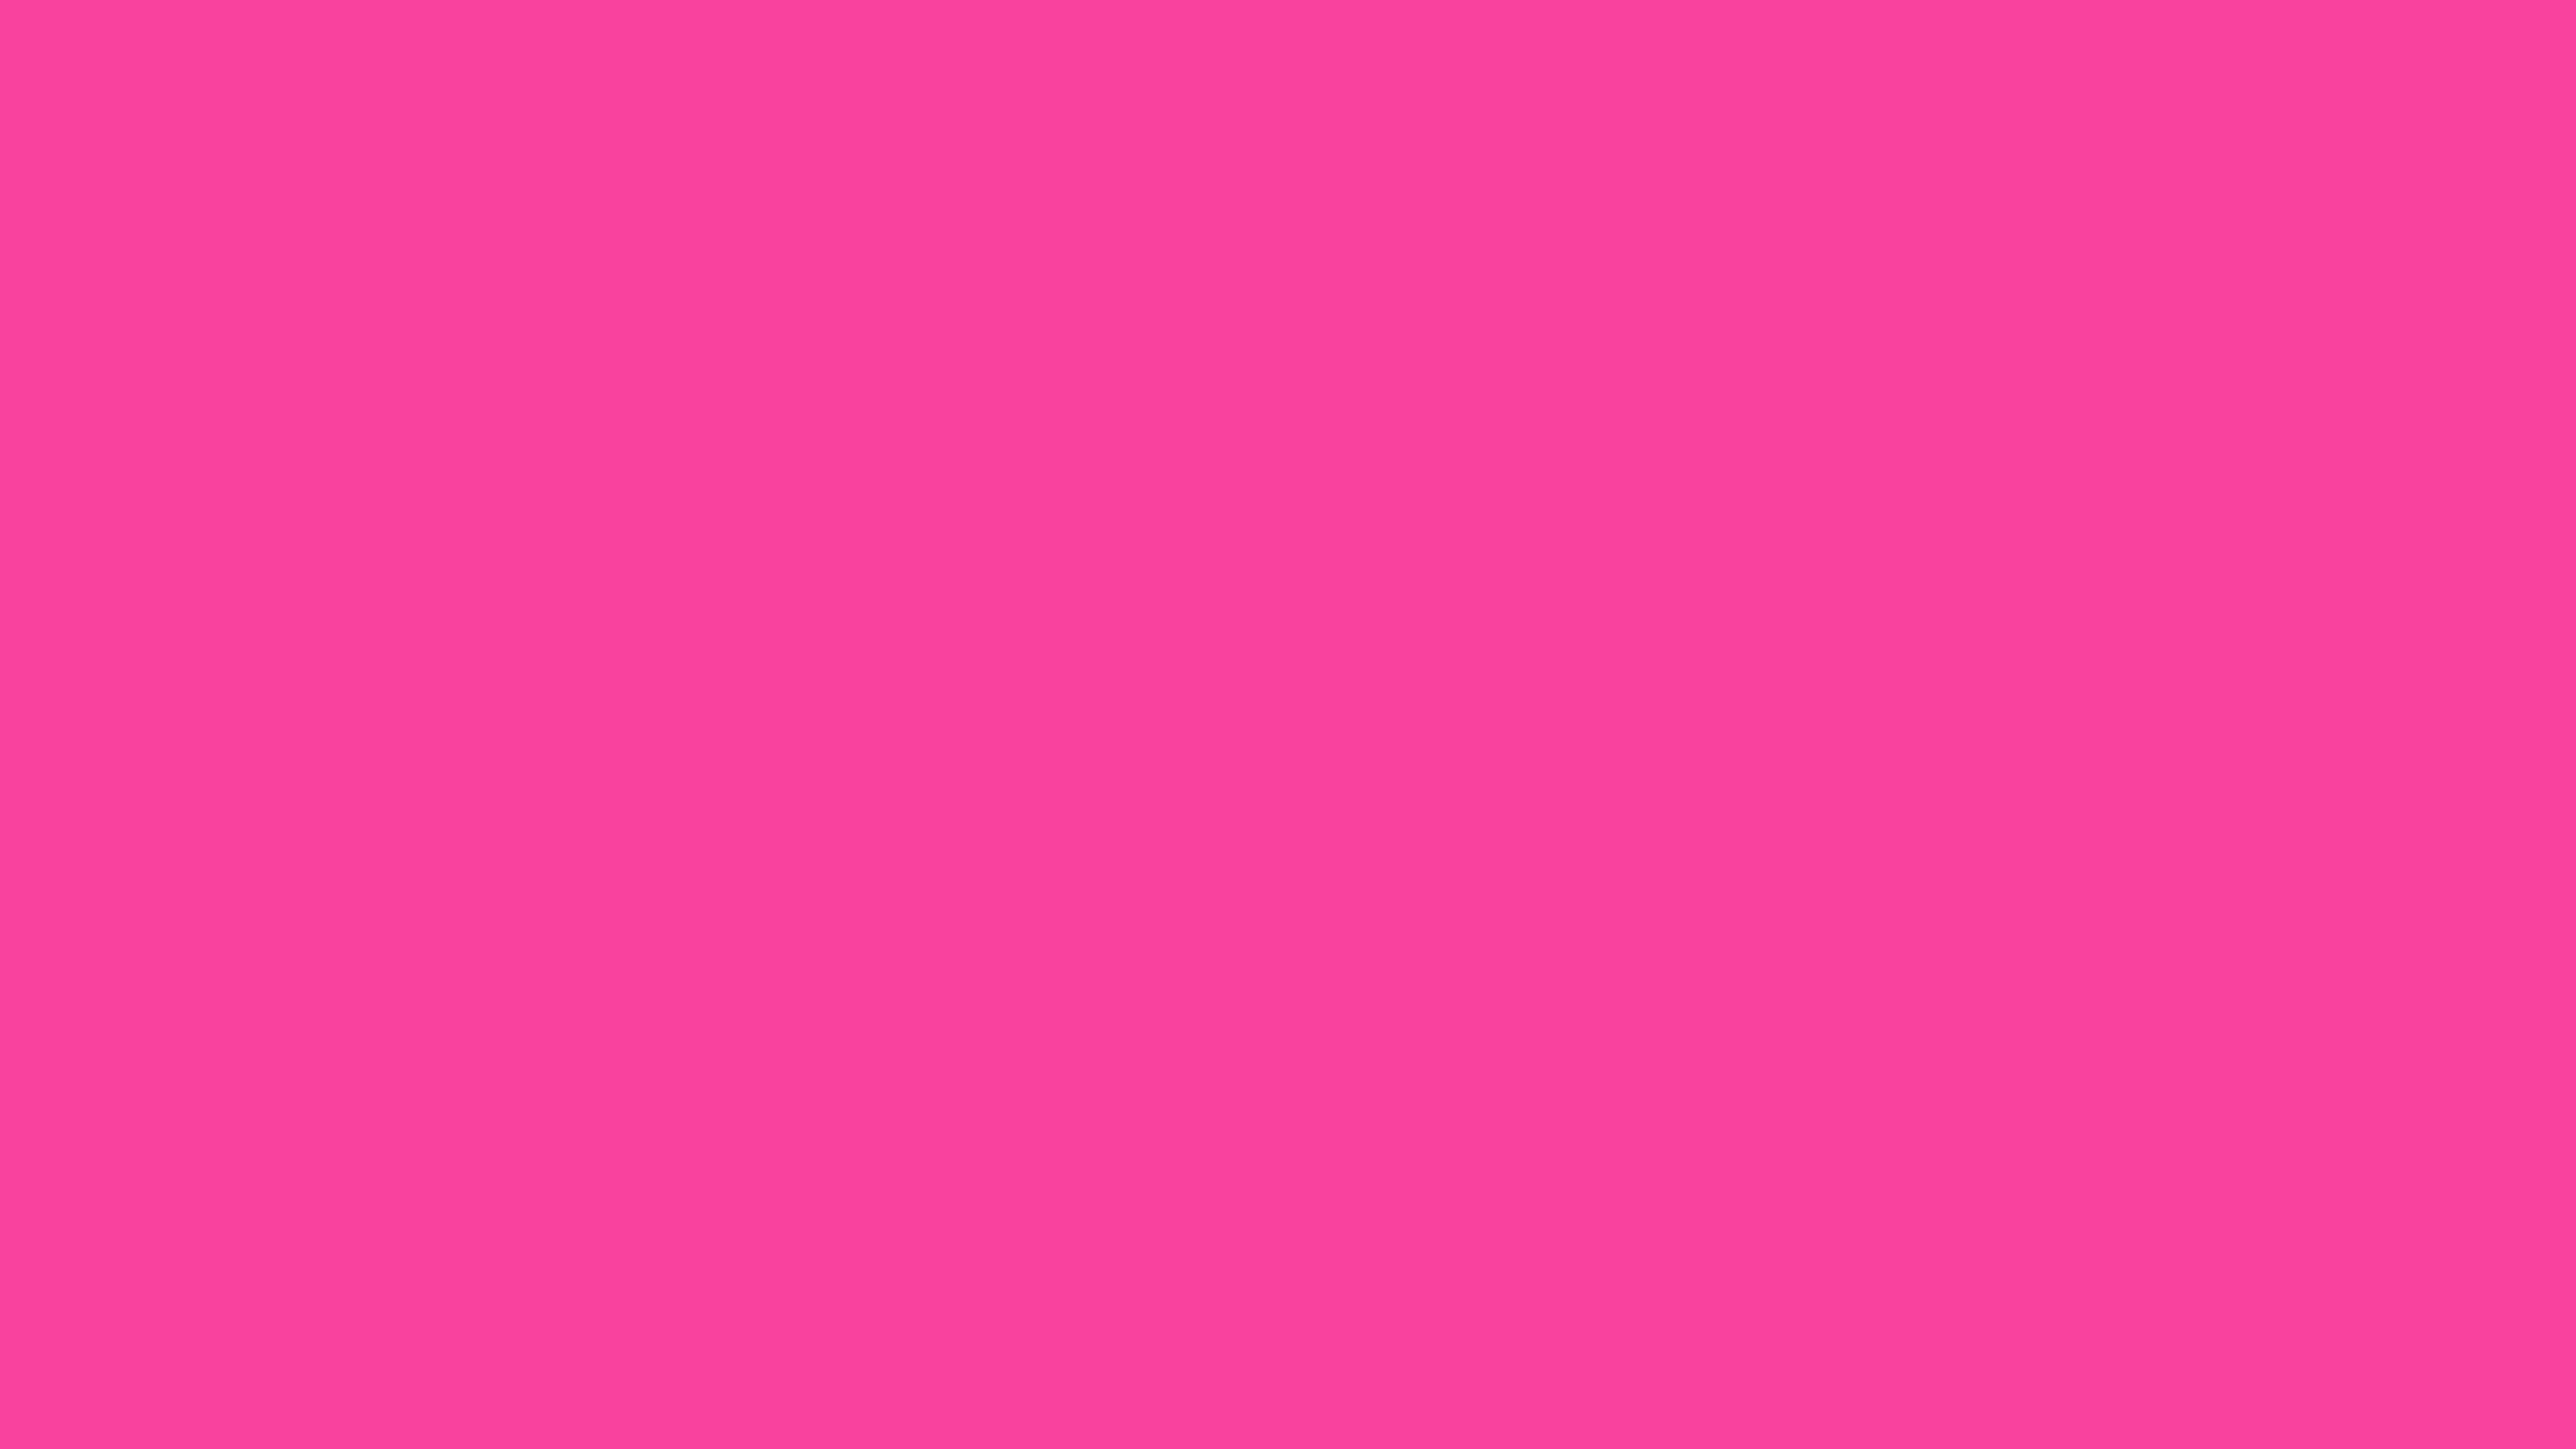 7680x4320 Rose Bonbon Solid Color Background